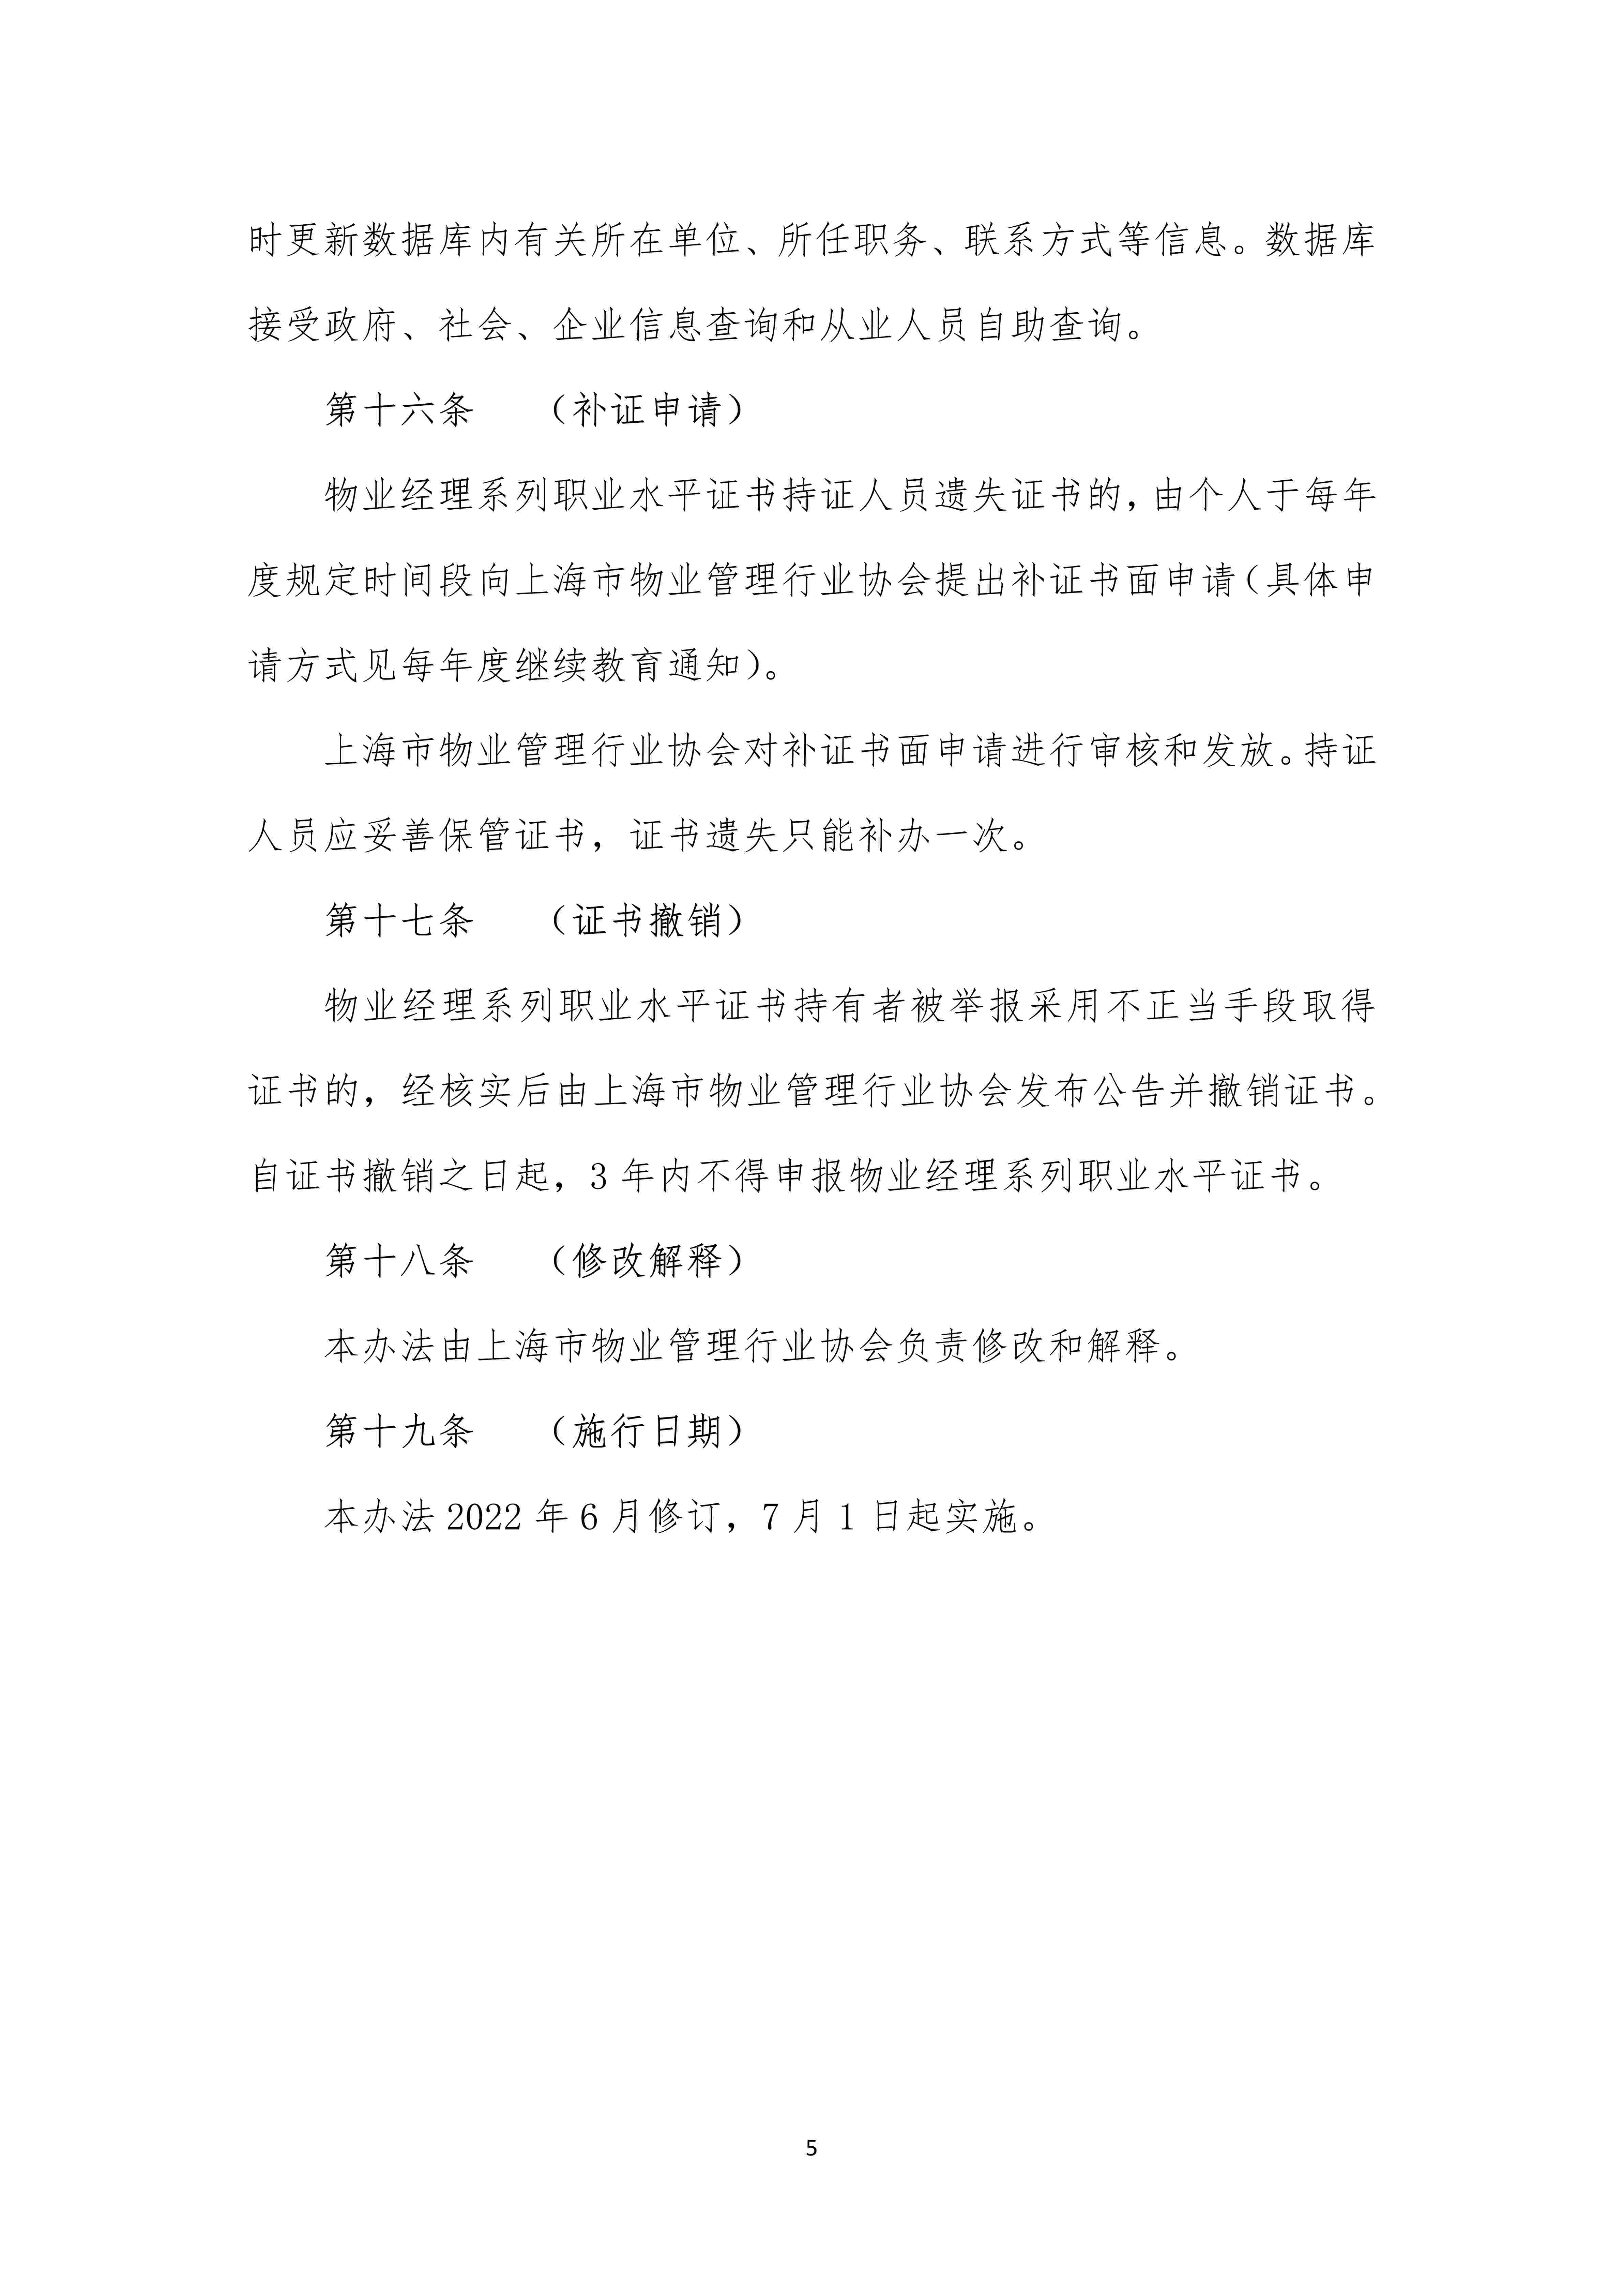 上海市物业管理行业物业经理系列职业水平证书管理办法（定稿）_5.jpg-2022-07-06-09-56-35-915.jpg